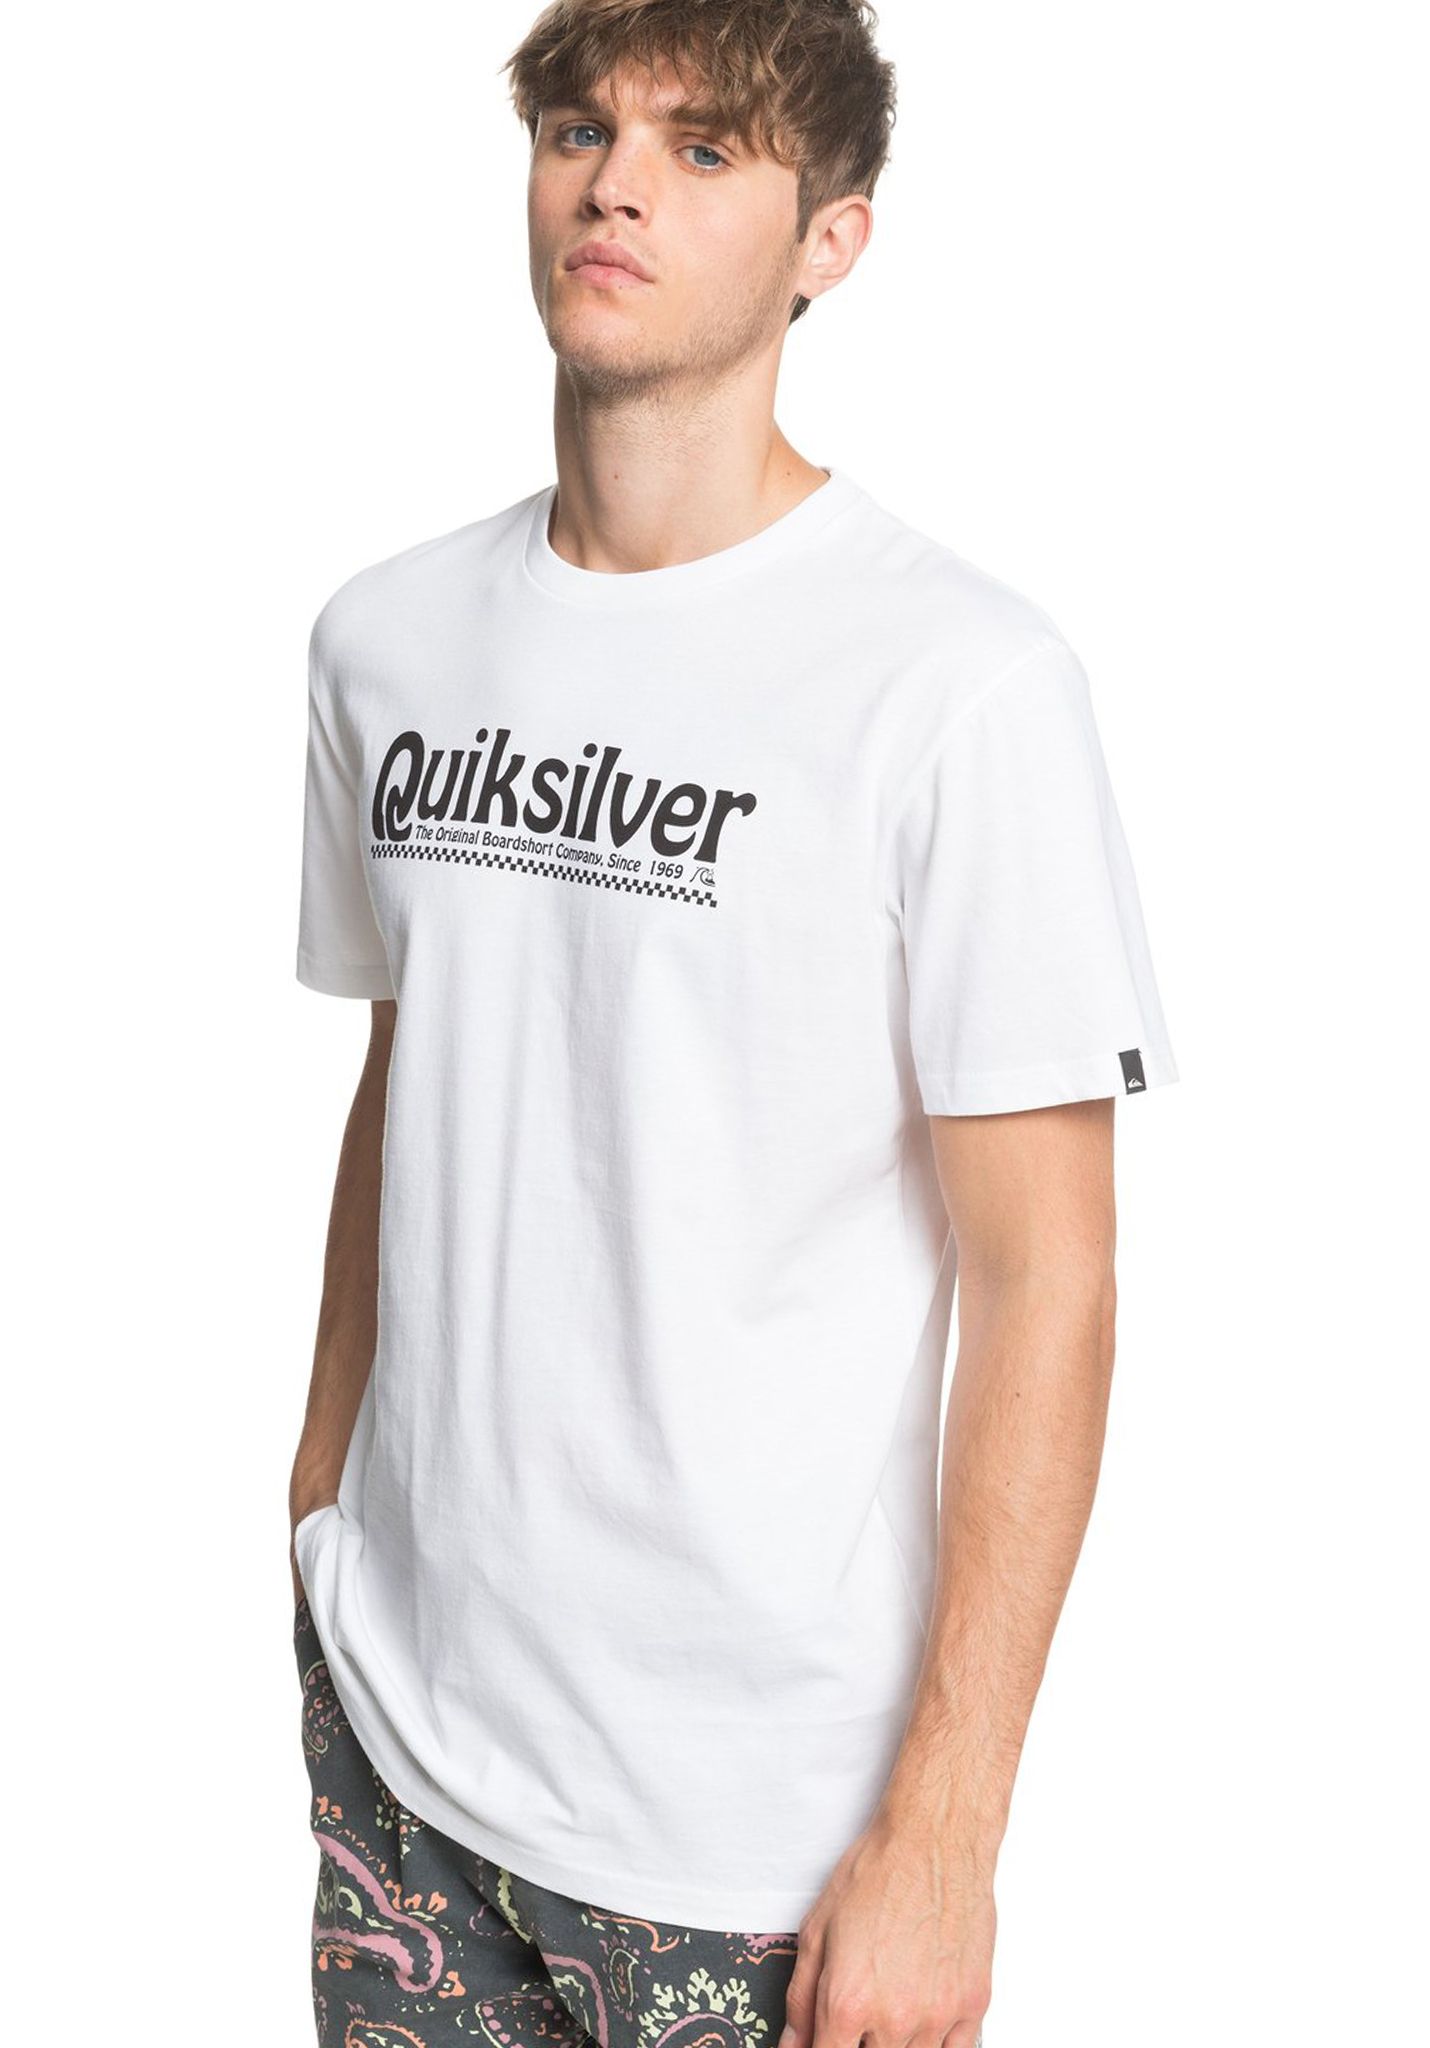 Quiksilver New Slang T-Shirt weiß M